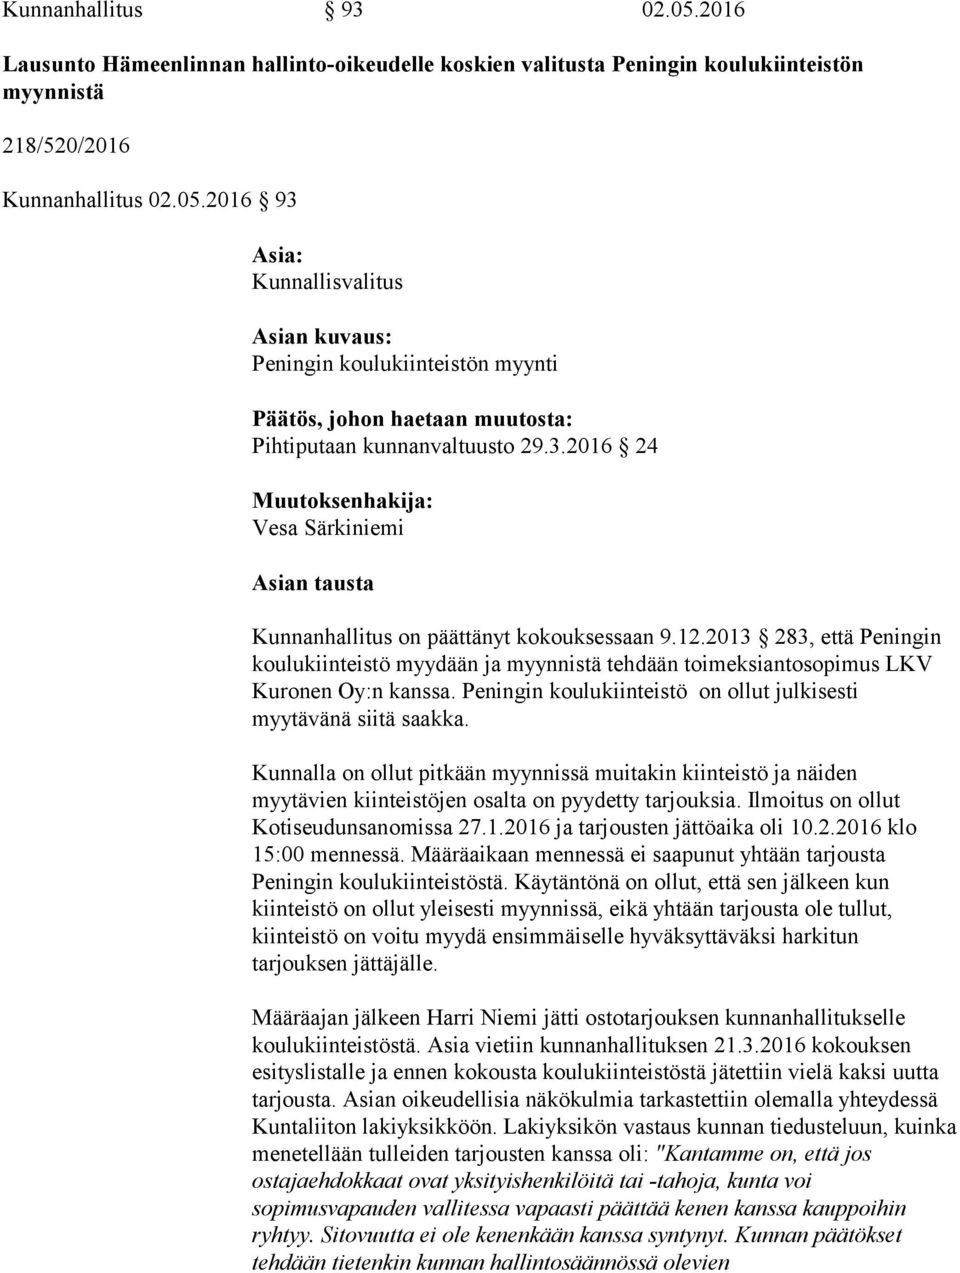 2013 283, että Peningin koulukiinteistö myydään ja myynnistä tehdään toimeksiantosopimus LKV Kuronen Oy:n kanssa. Peningin koulukiinteistö on ollut julkisesti myytävänä siitä saakka.